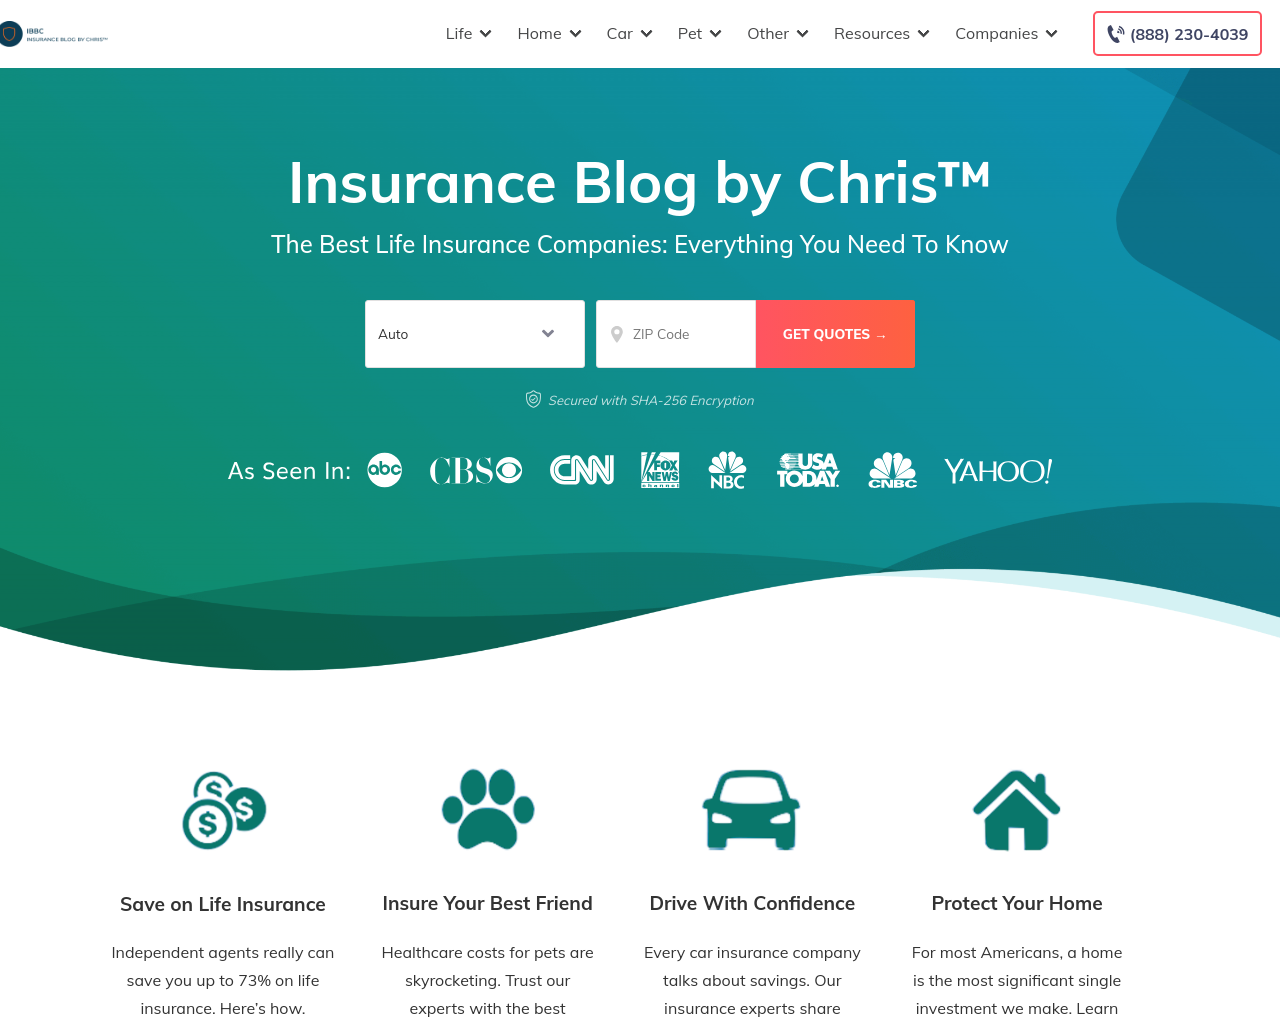 insuranceblogbychris.com